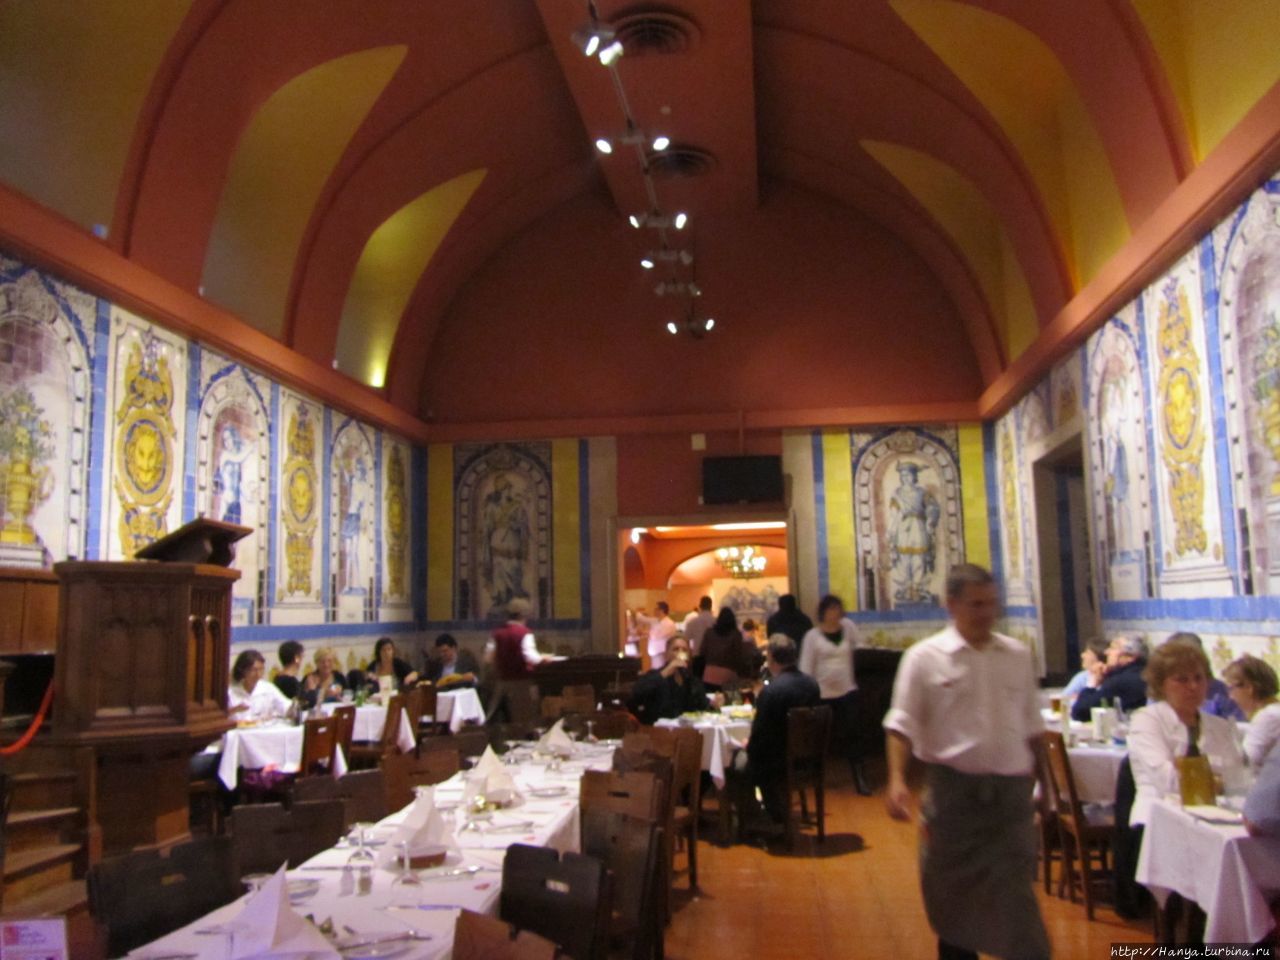 Главный зал пивной, бывшая монастырская трапезная, с плиткой, подписанной «Феррейра дас Табулетас» в 1863 году Лиссабон, Португалия